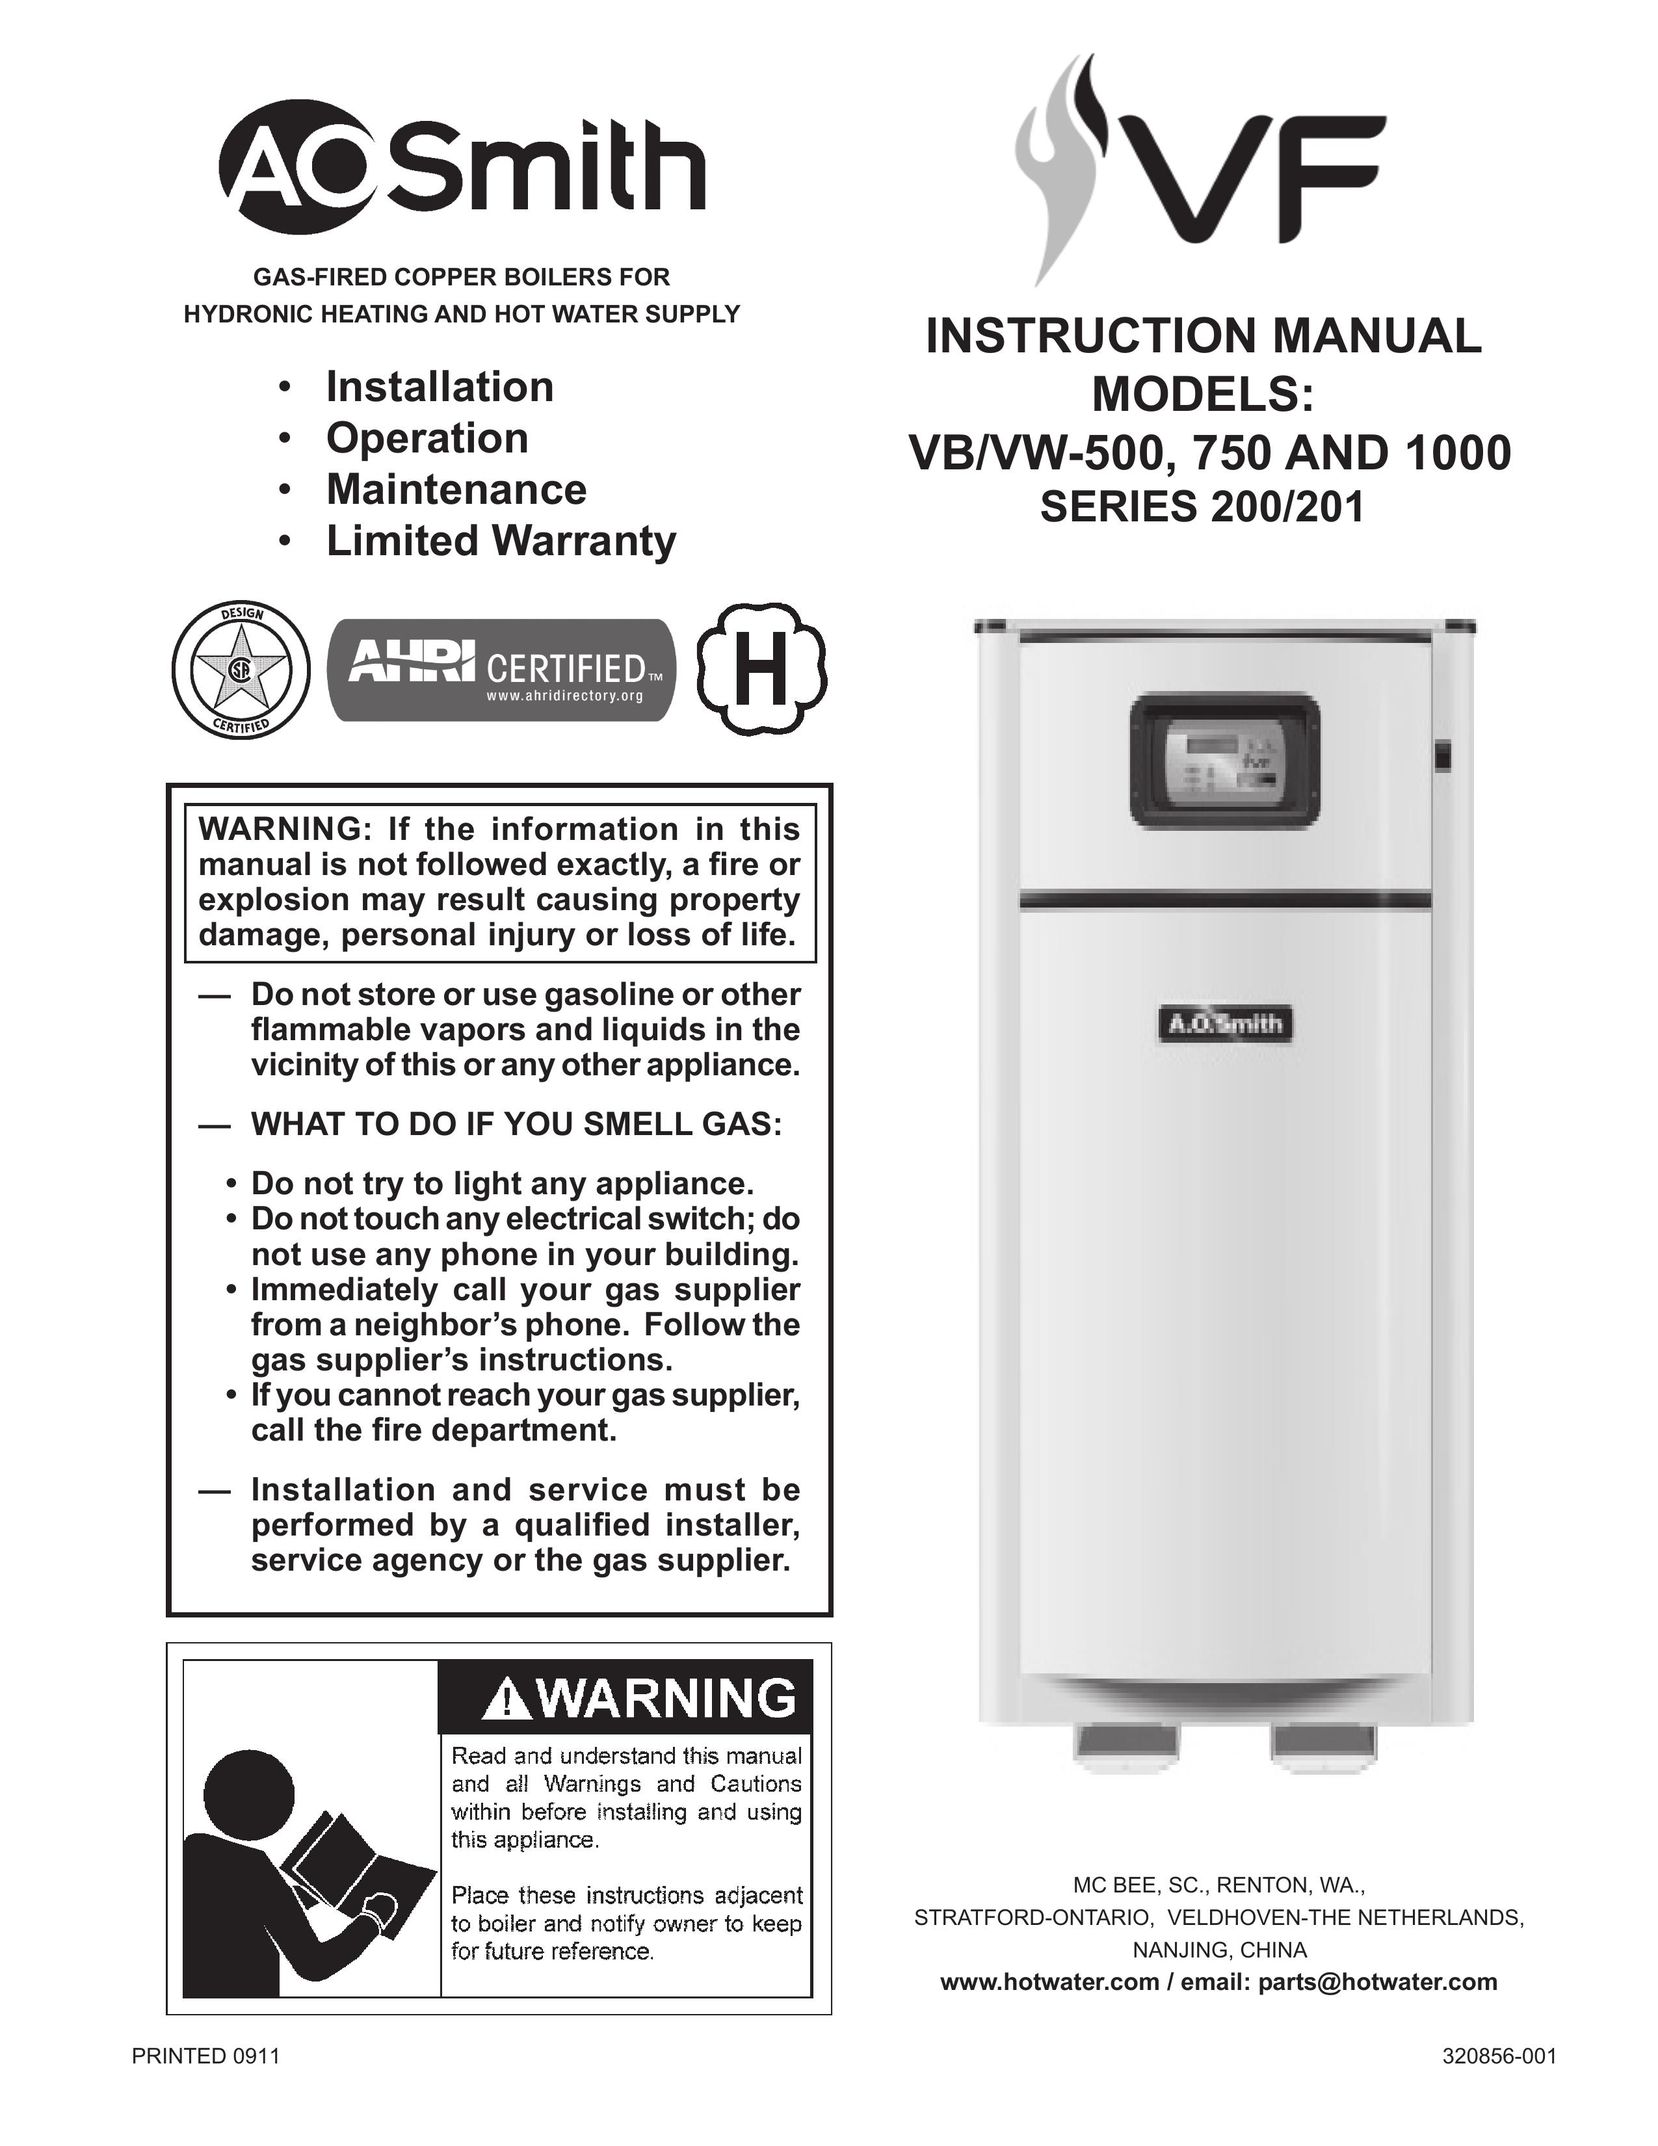 A.O. Smith VB/VW- 750 Boiler User Manual